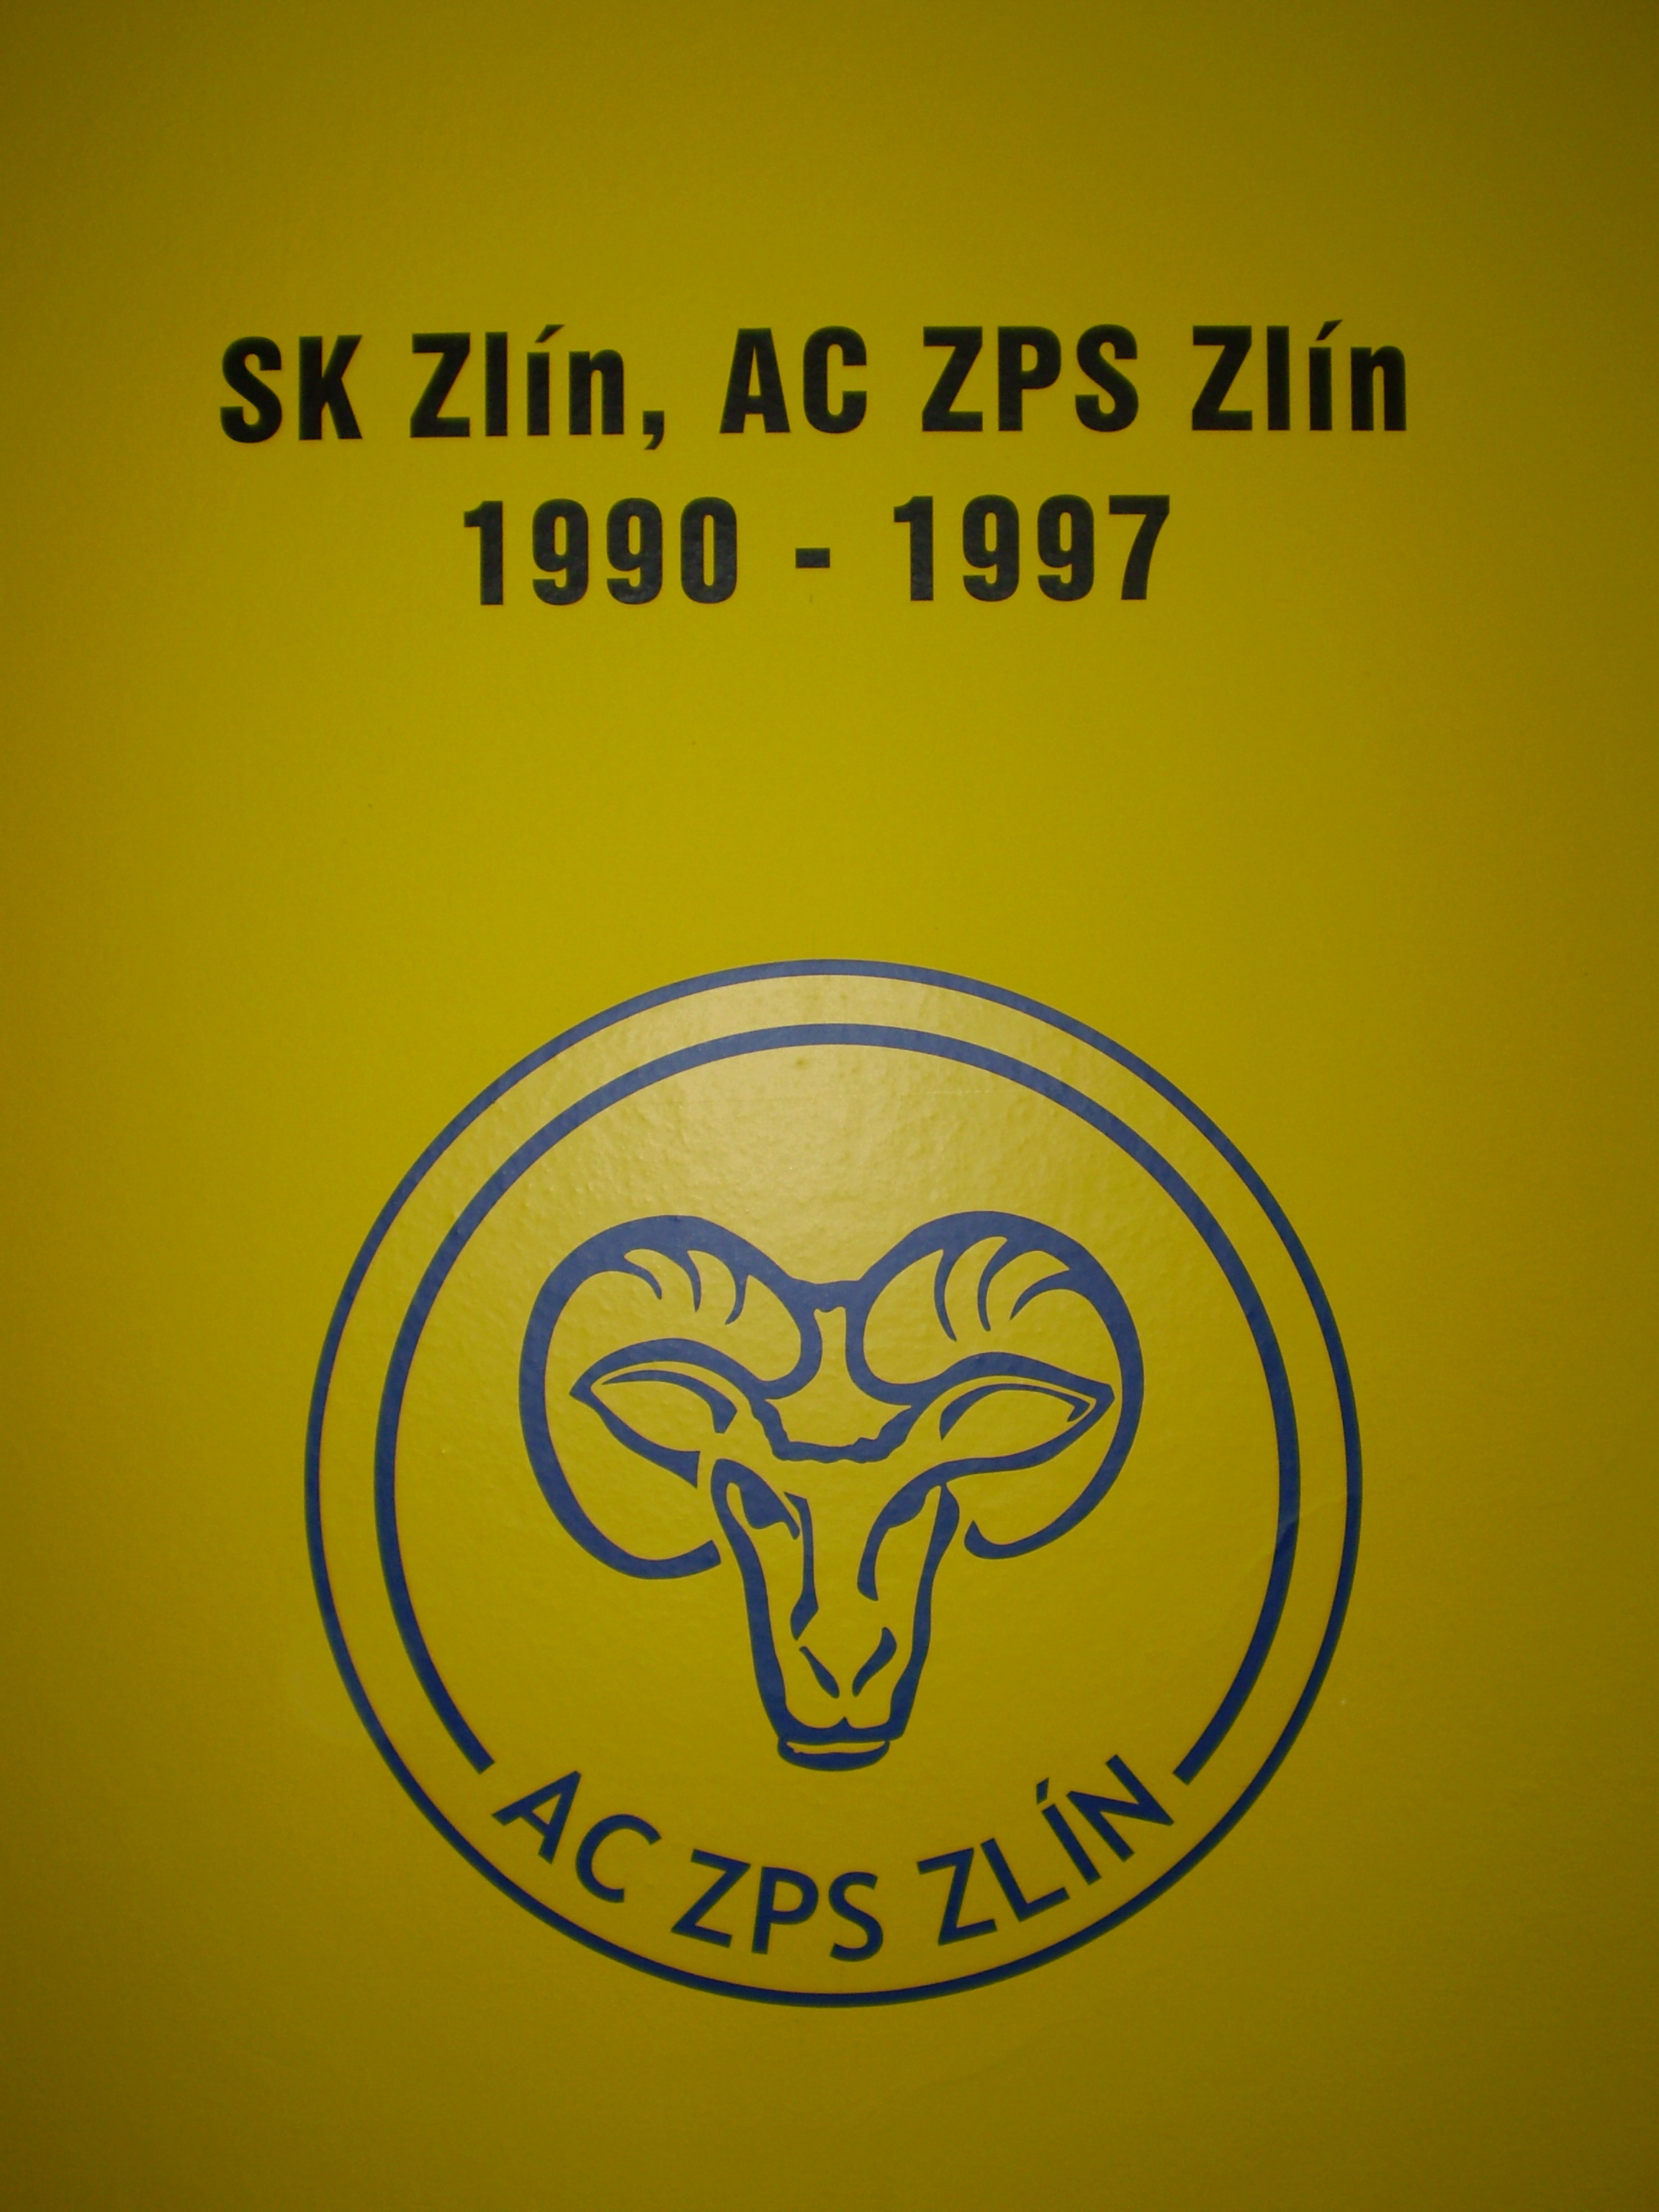 SK Zlín, AC ZPS Zlín -1990-1997.JPG